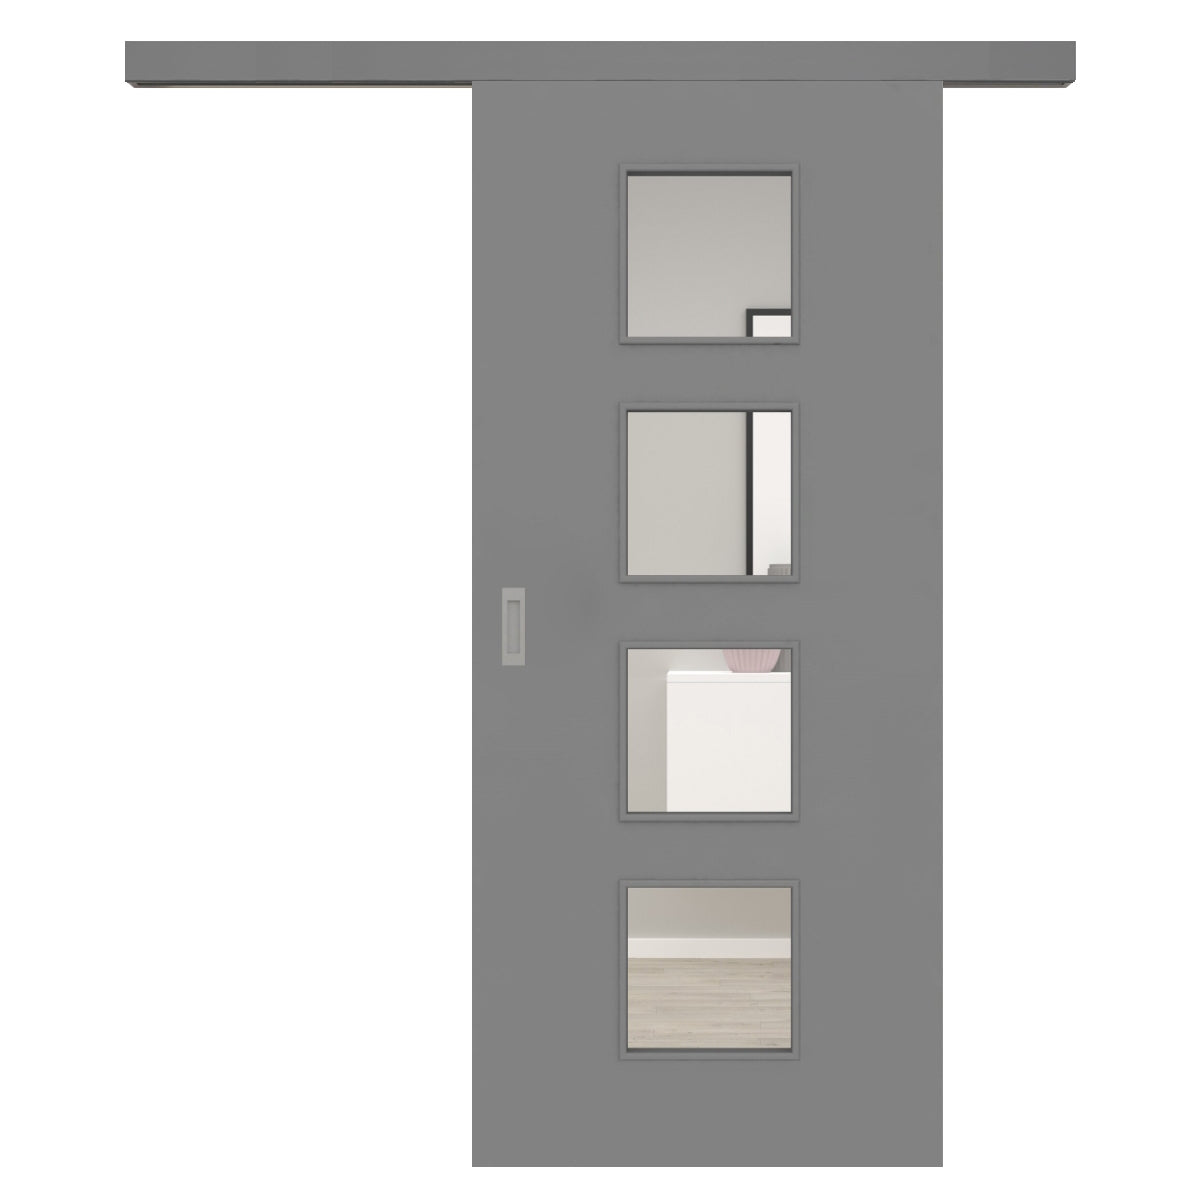 Schiebetür für Set mit grauem Laufkasten mit Lichtausschnitt grau glatt - Modell LA4